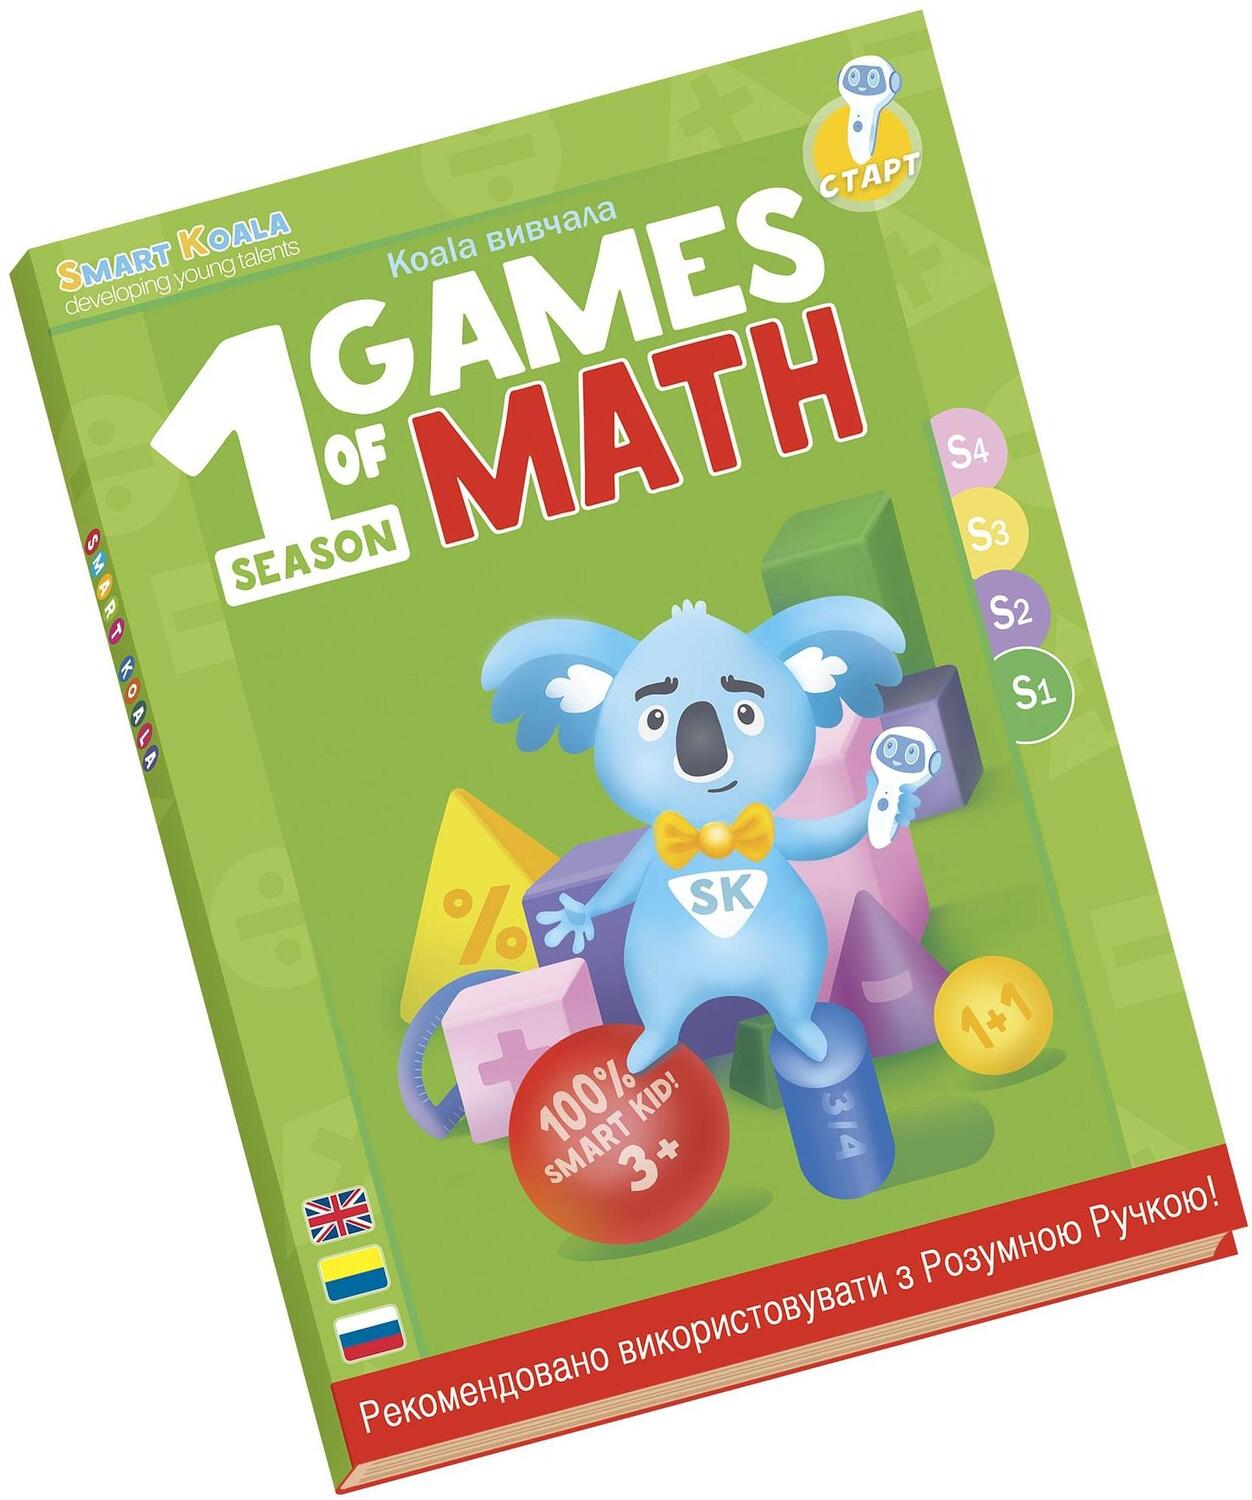 Набор интерактивных книг Smart Koala Игры математики, 1, 2 сезон (SKB12GM) - фото 2